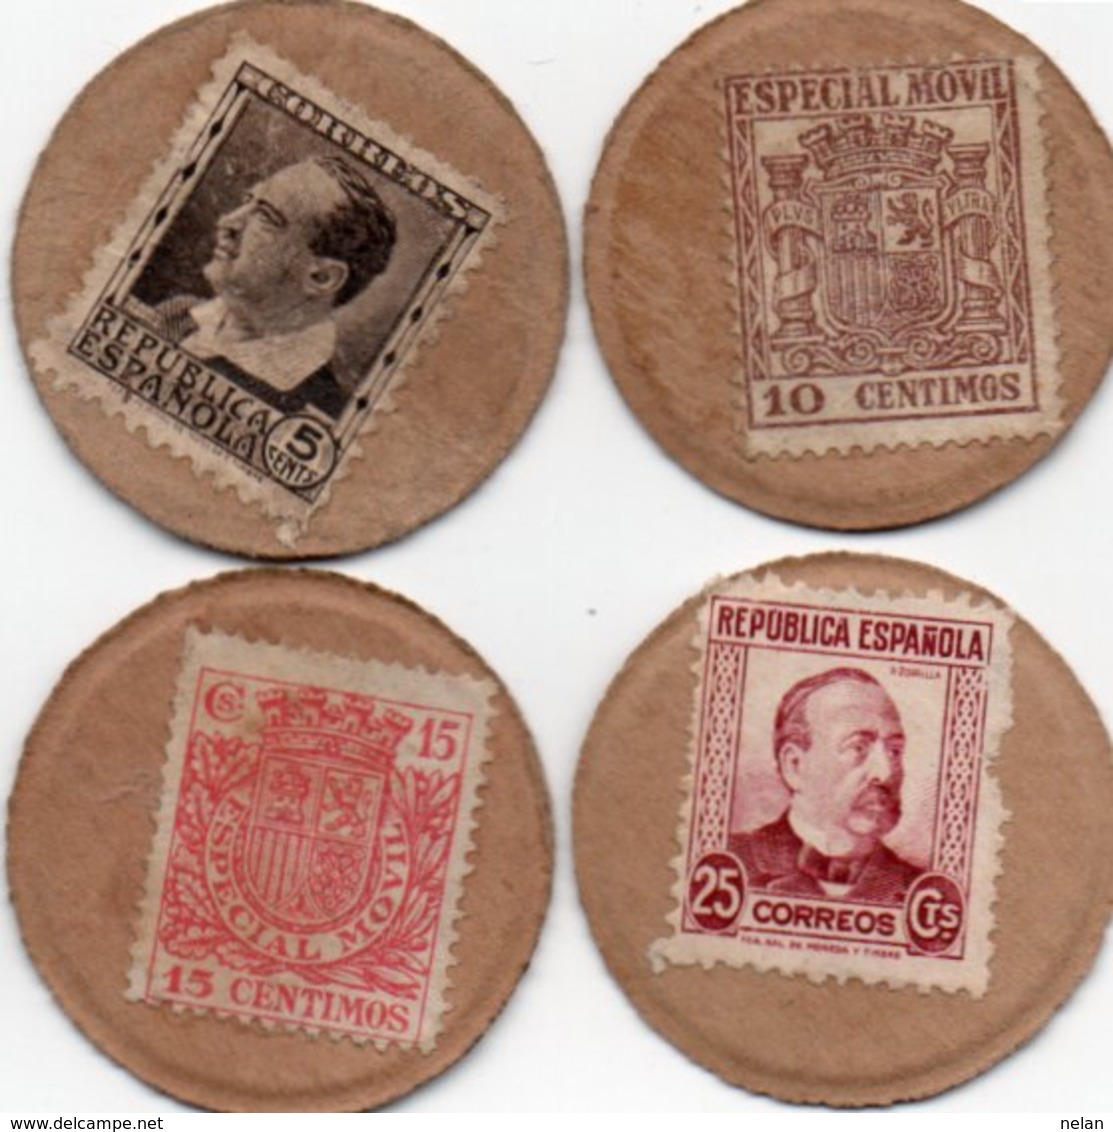 SPAGNA 5,10,15,25 CENTIMOS 1938 P-96 F,I,P,R (PERFETTE CONDIZIONI)Spagna, Fábrica Nacional De Moneda Y Timbre - FNMT - Collezioni